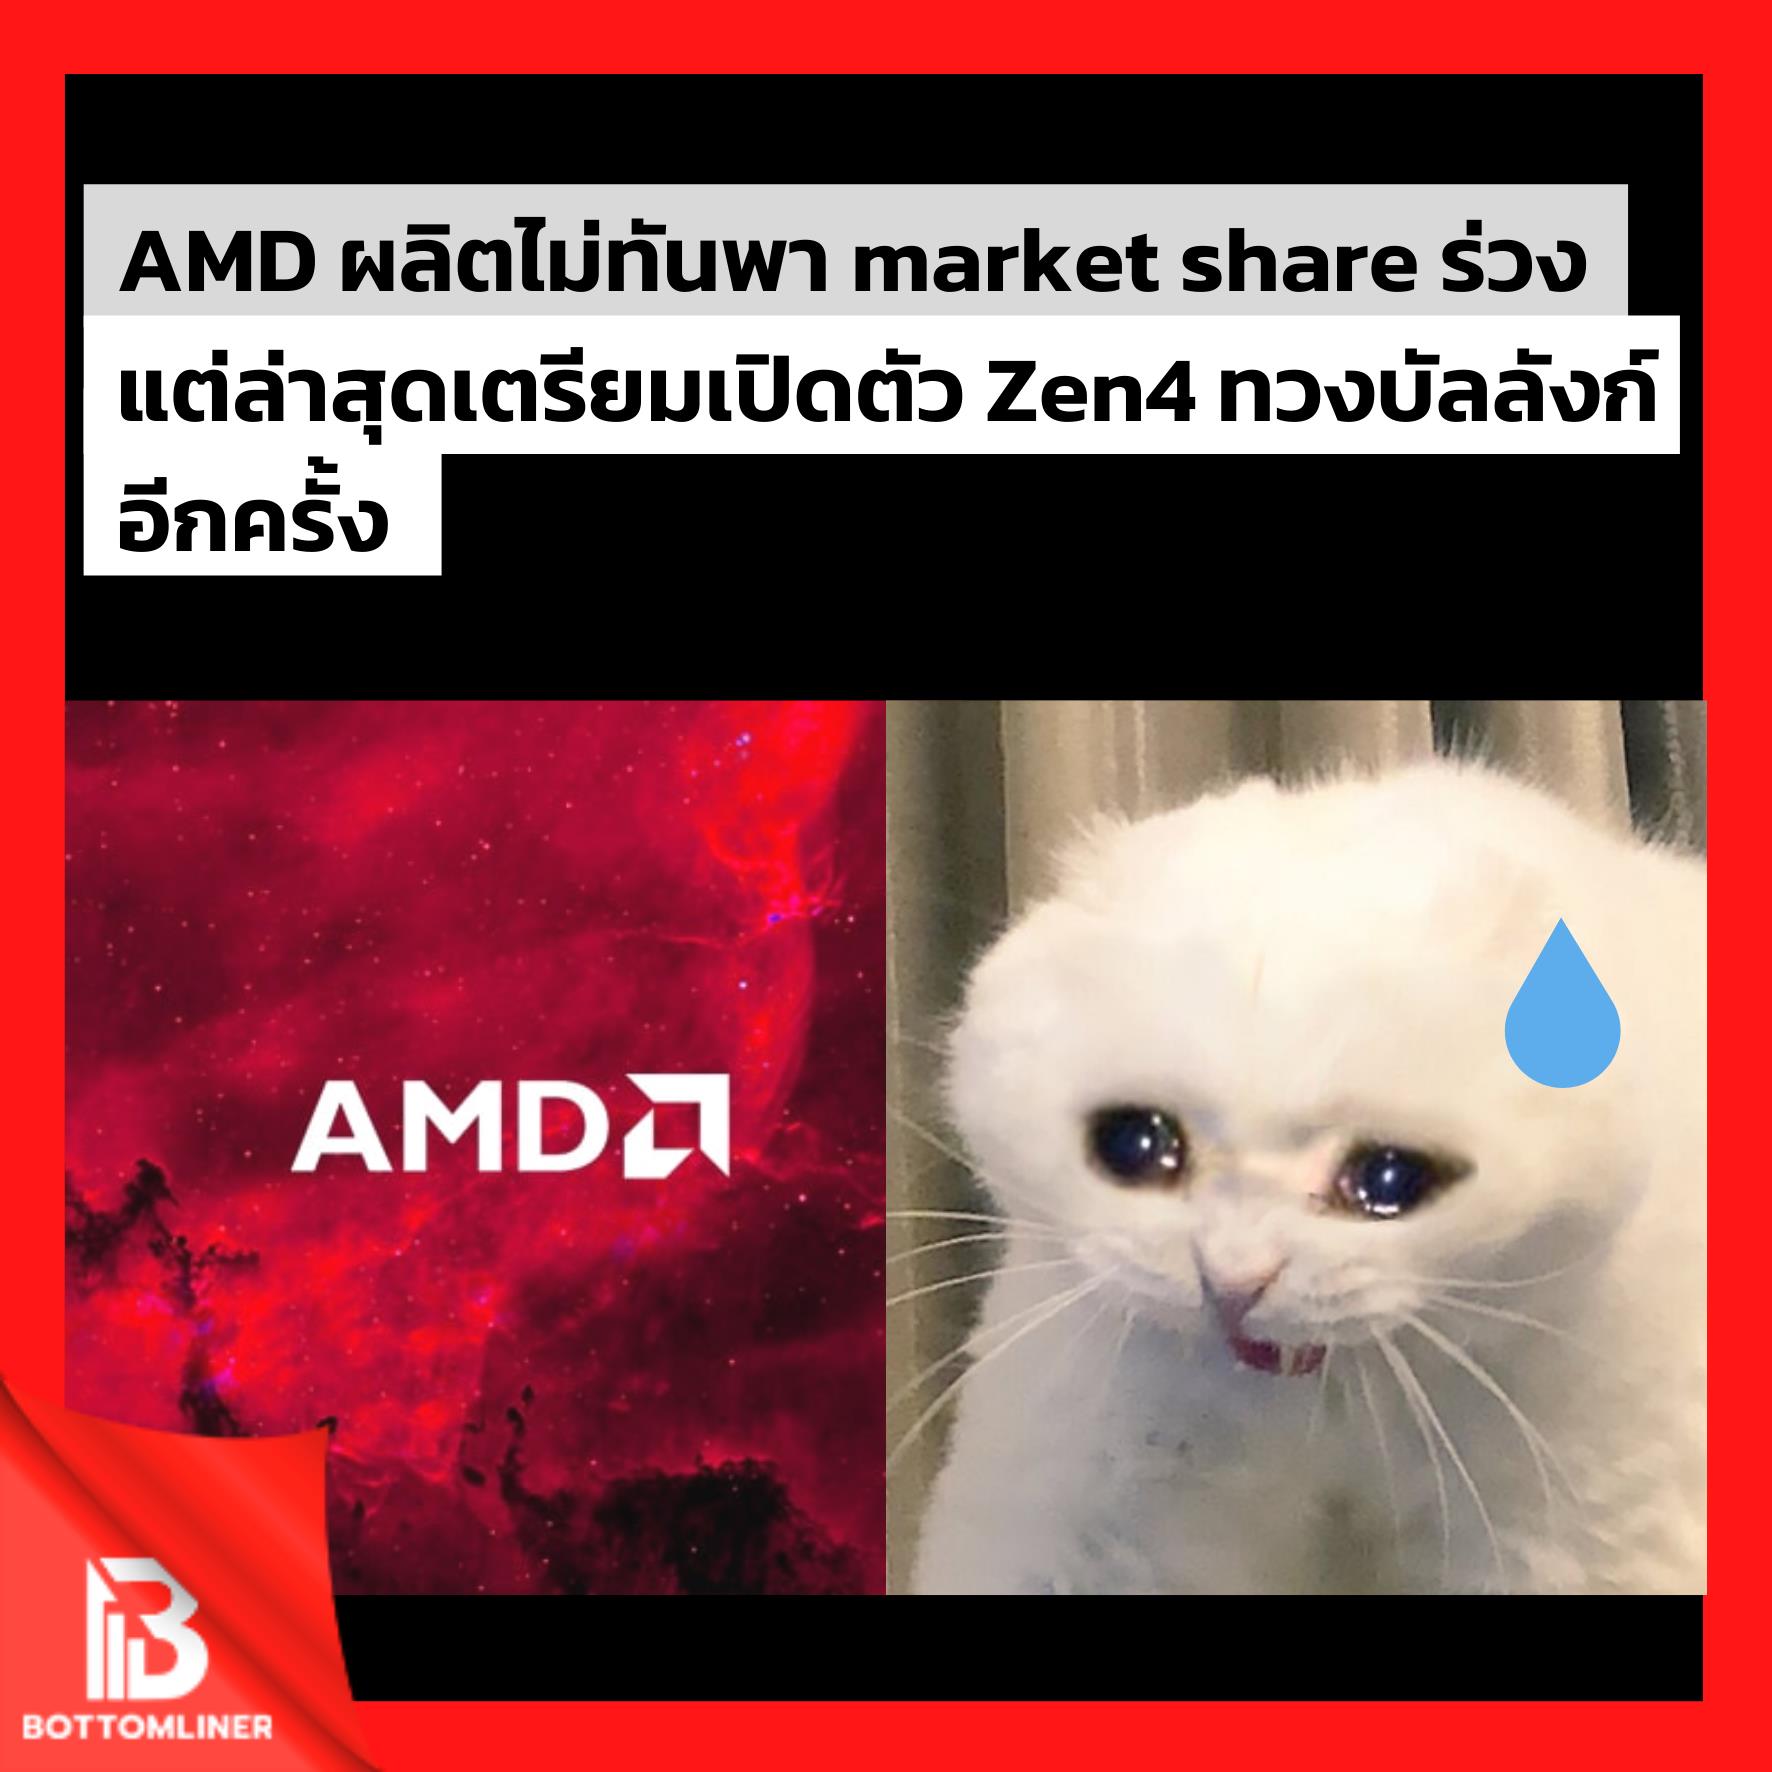 AMD ผลิตสินค้าไม่ทันพา market share ร่วง แต่ล่าสุดเตรียมเปิดตัว Zen4 ทวงบัลลังก์อีกครั้ง